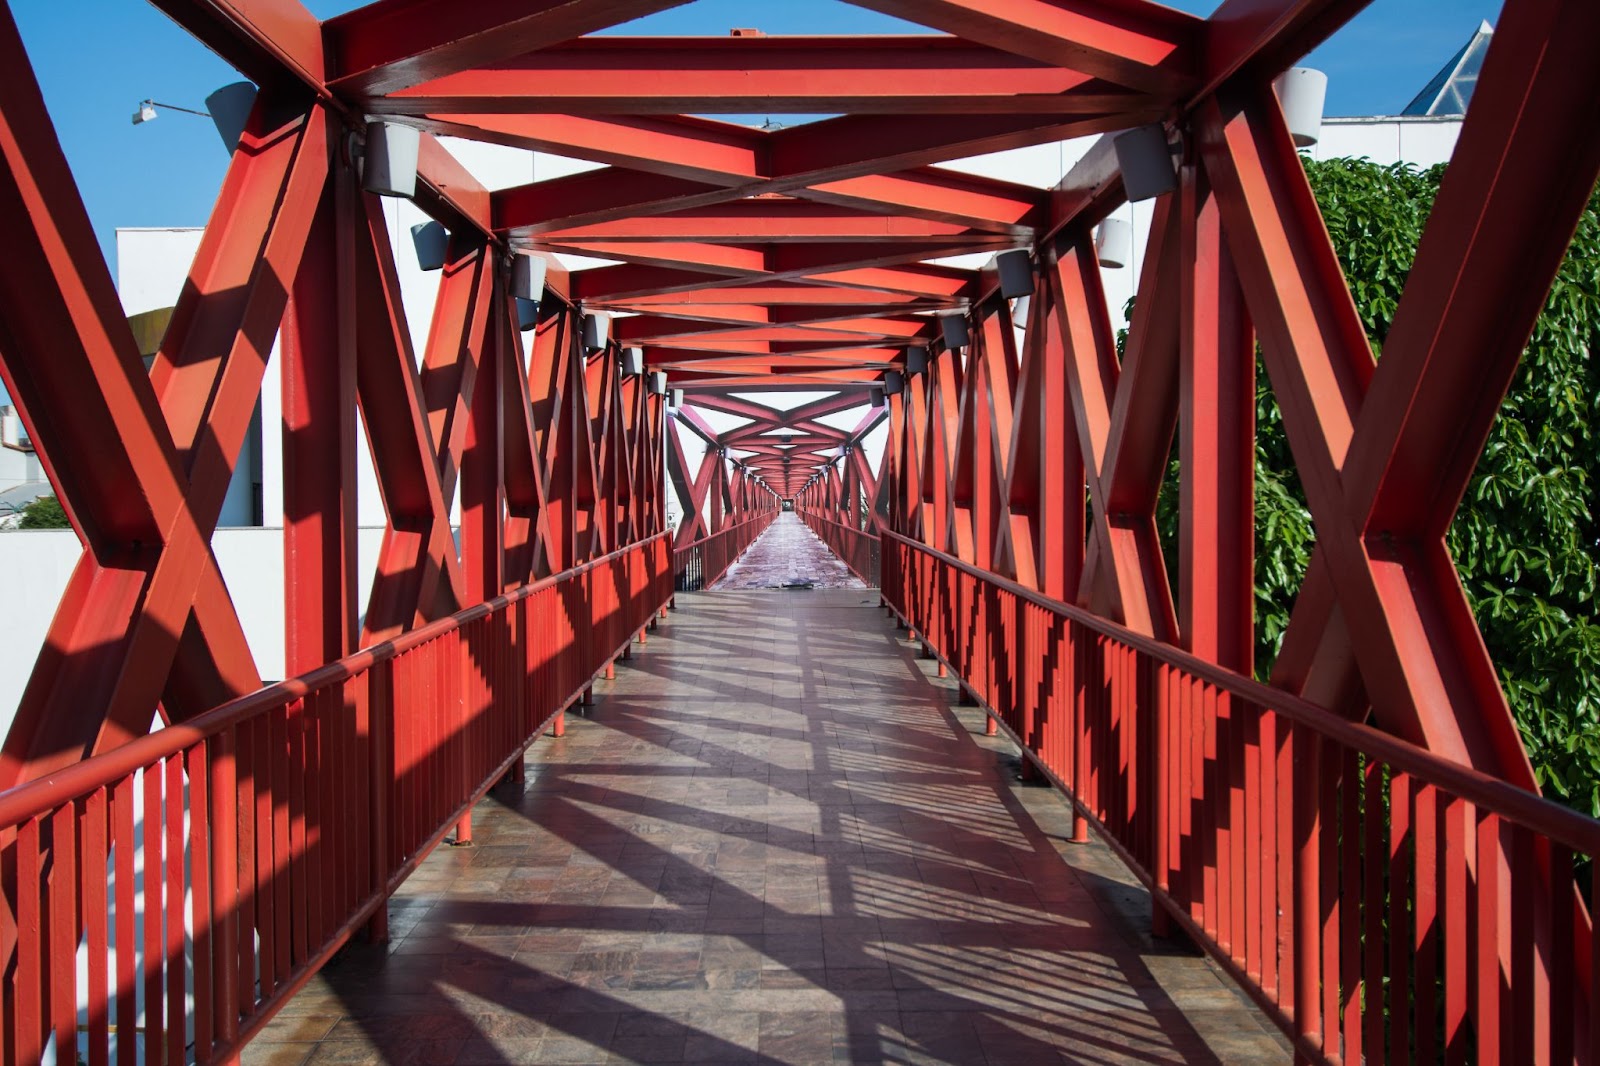 Passarela de metal vermelho do Centro Dragão do Mar, um dos principais pontos turísticos de Fortaleza.